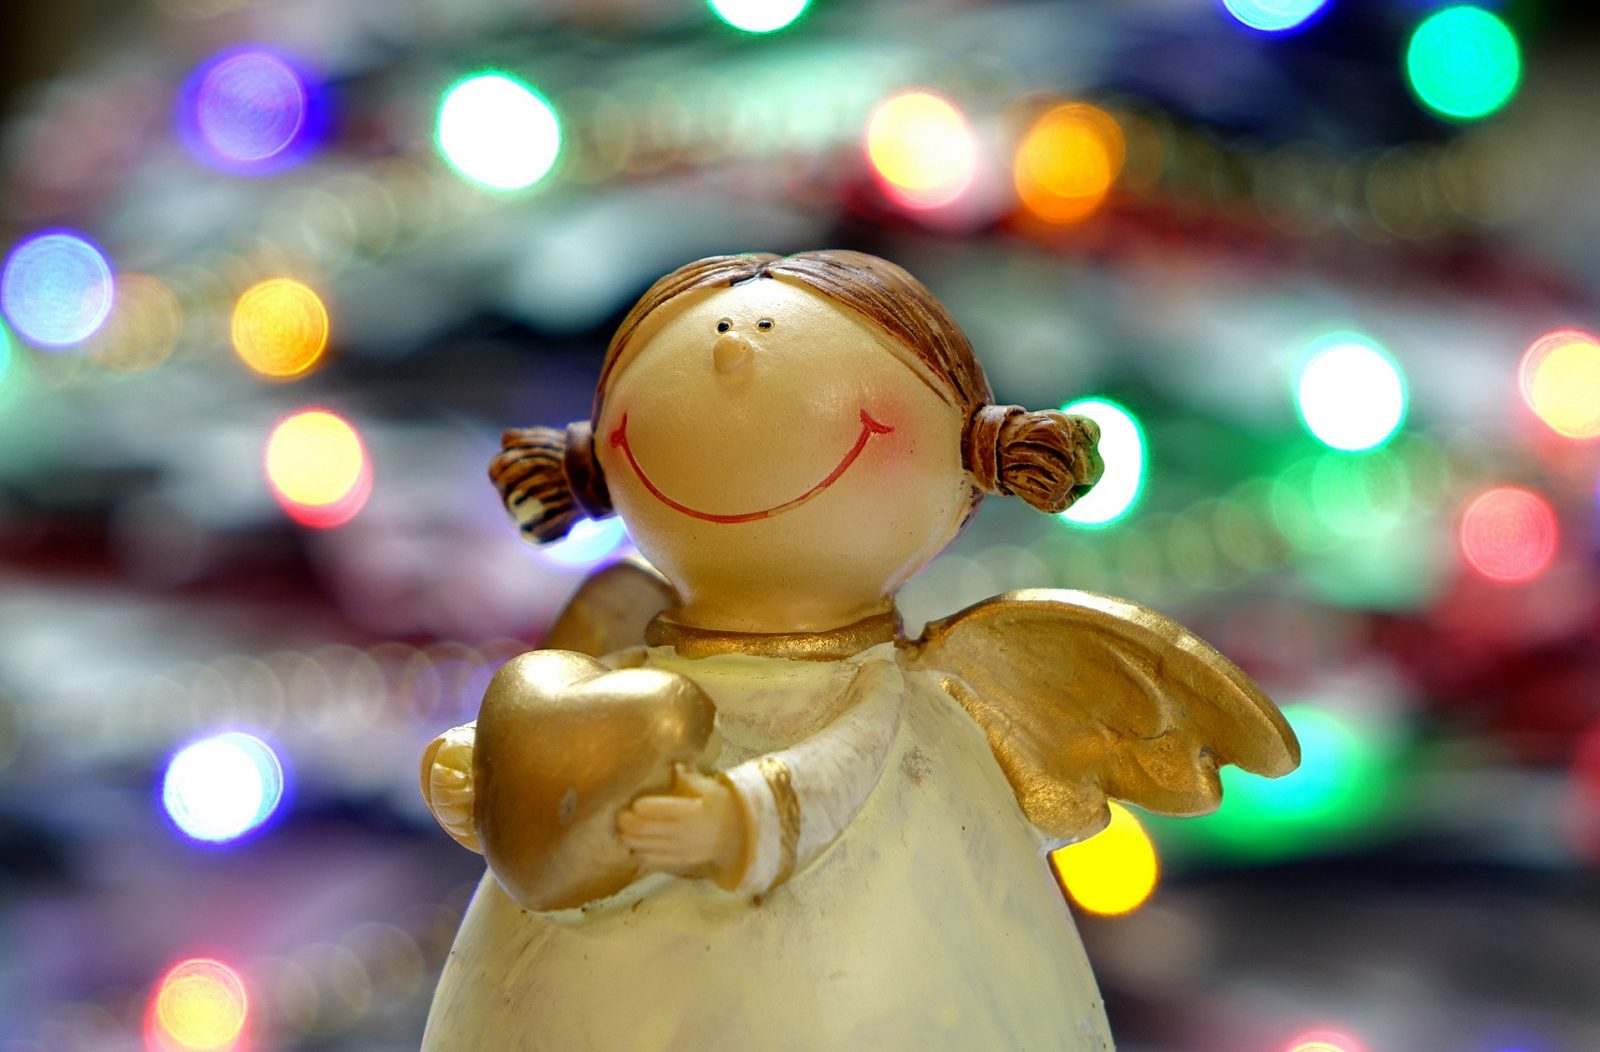 ceramiczny aniołek z jarmarku w Pradze, ozdoby świąteczne na kiermaszach